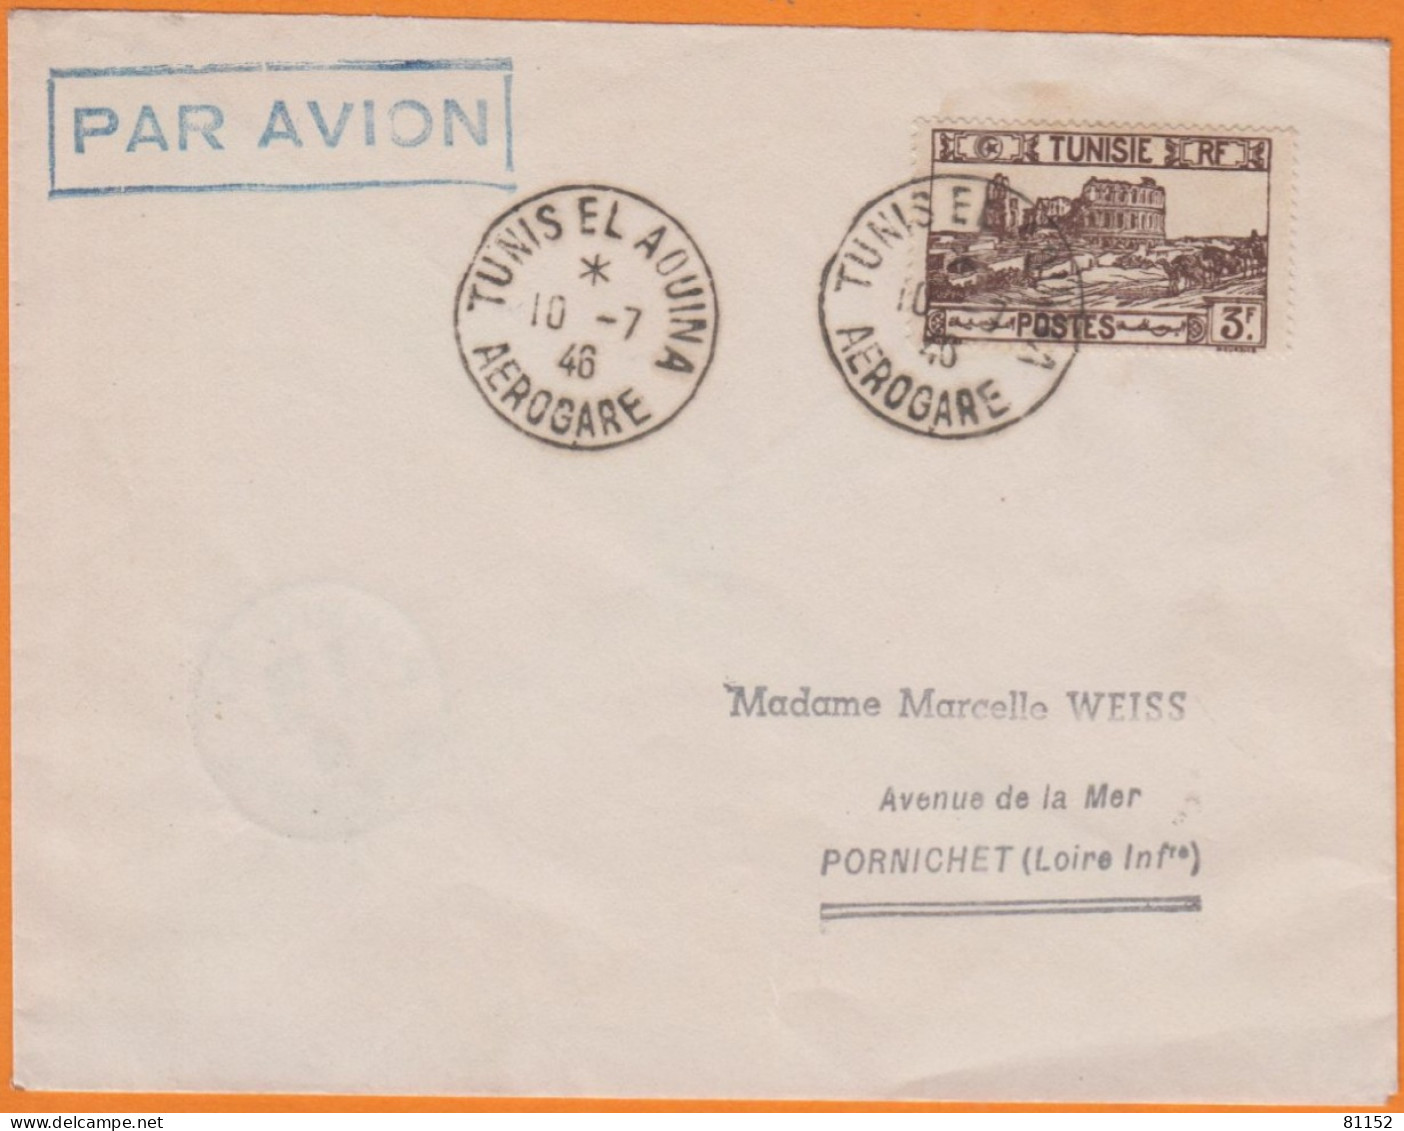 Lettre PAR AVION De TUNIS EL AOUINA  AEROGARE   Le 10 7 1947   Pour  44 PORNICHET  Affranchie à 3F - Airmail